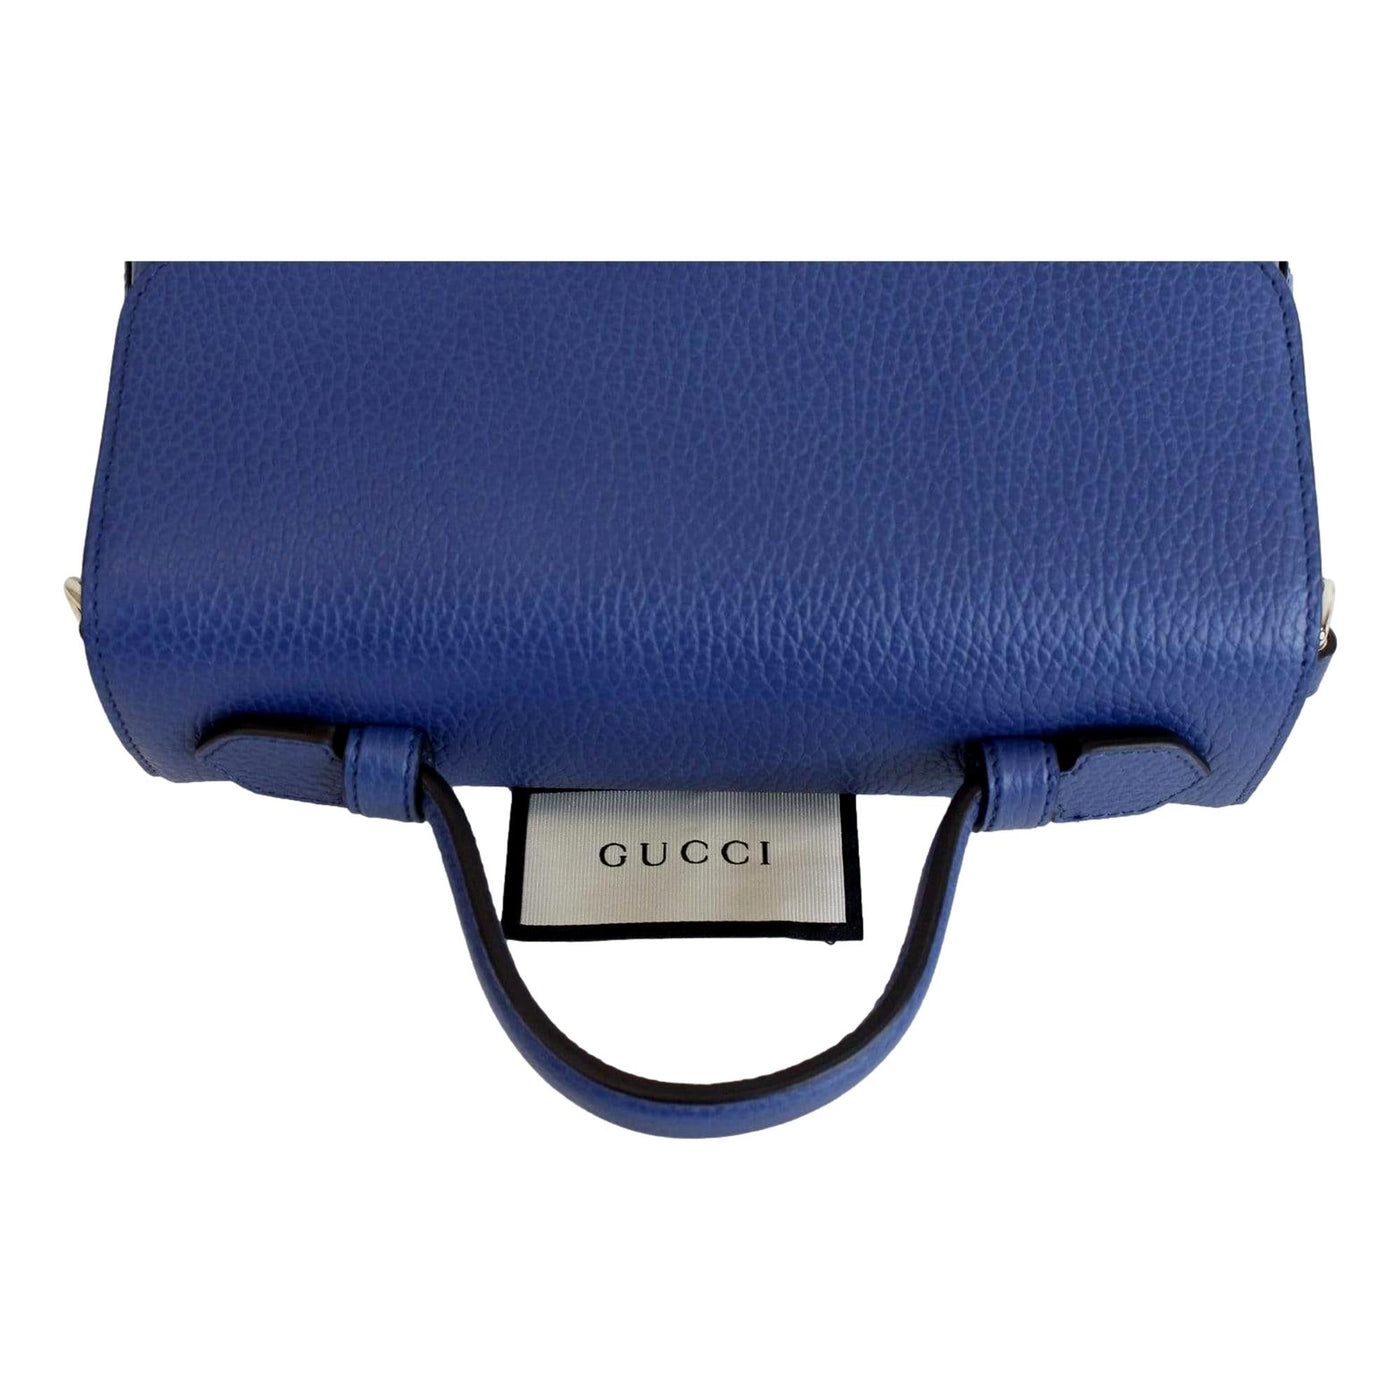 Gucci Interlocking G Caspian Blue Leather Chain Shoulder Bag - LUXURYMRKT